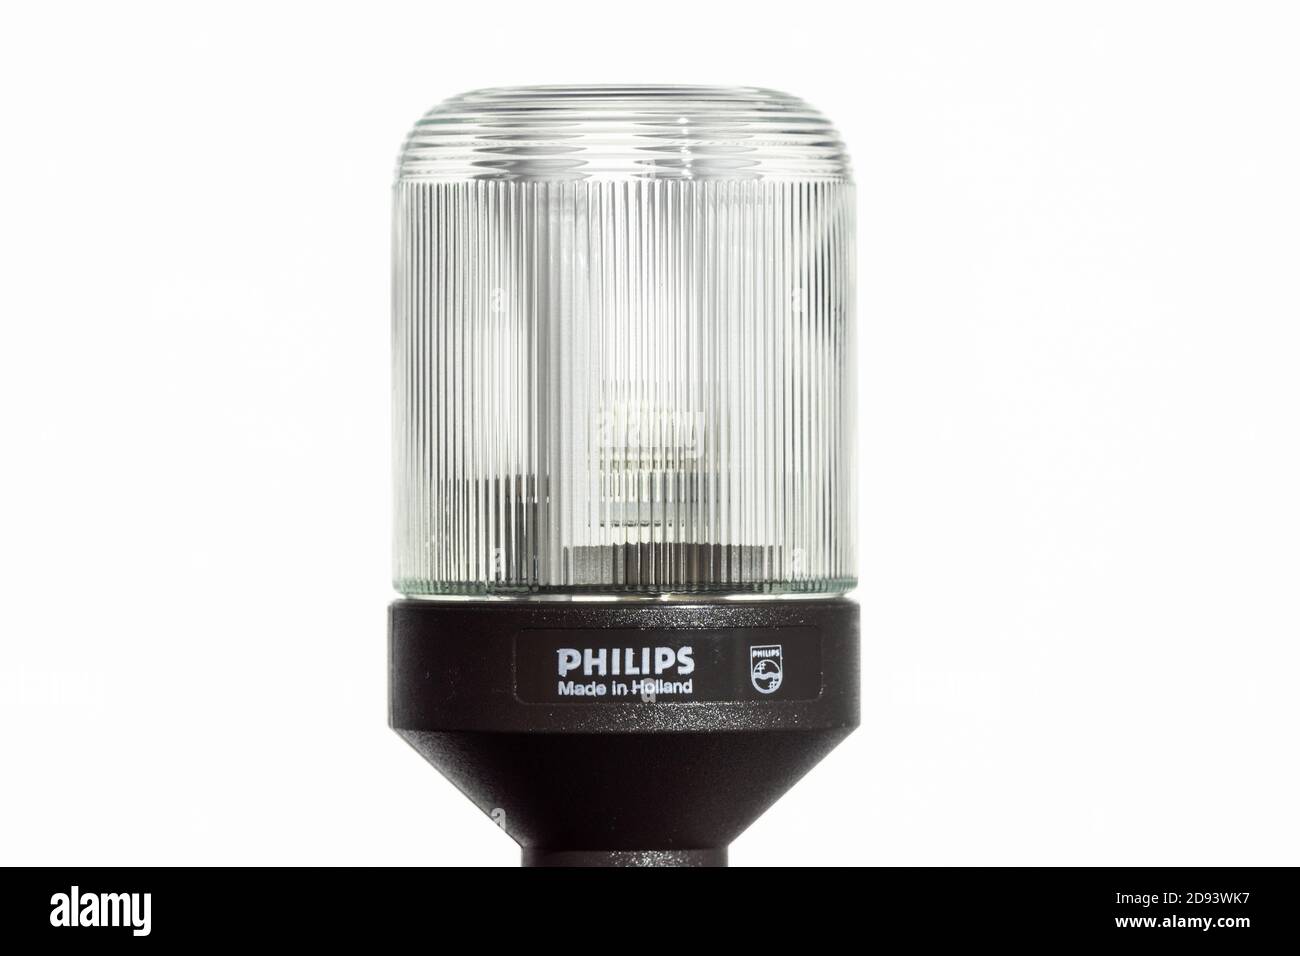 Philips SL*9 CFL à base noire, ancien exemple rare de CFL original ou de conception à économie d'énergie datant du début des années 1980, les lampes suivantes avaient une base blanche Banque D'Images